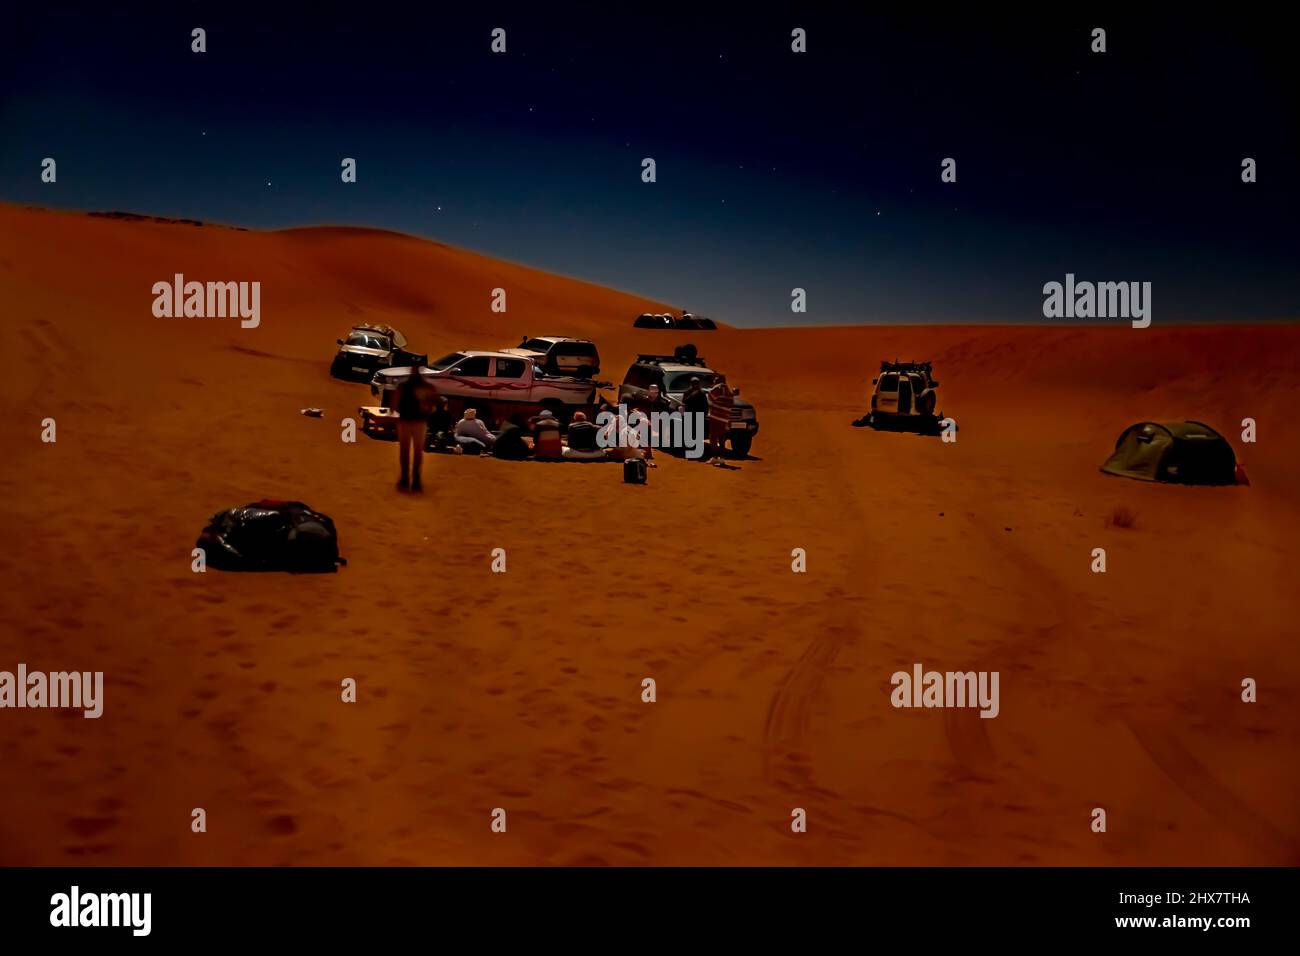 Gruppo irriconoscibile di turisti e campo tuareg nel deserto del Sahara di notte. Veicoli 4X4 parcheggiati, dune di sabbia di colore rosso, stelle nel cielo scuro. Foto Stock